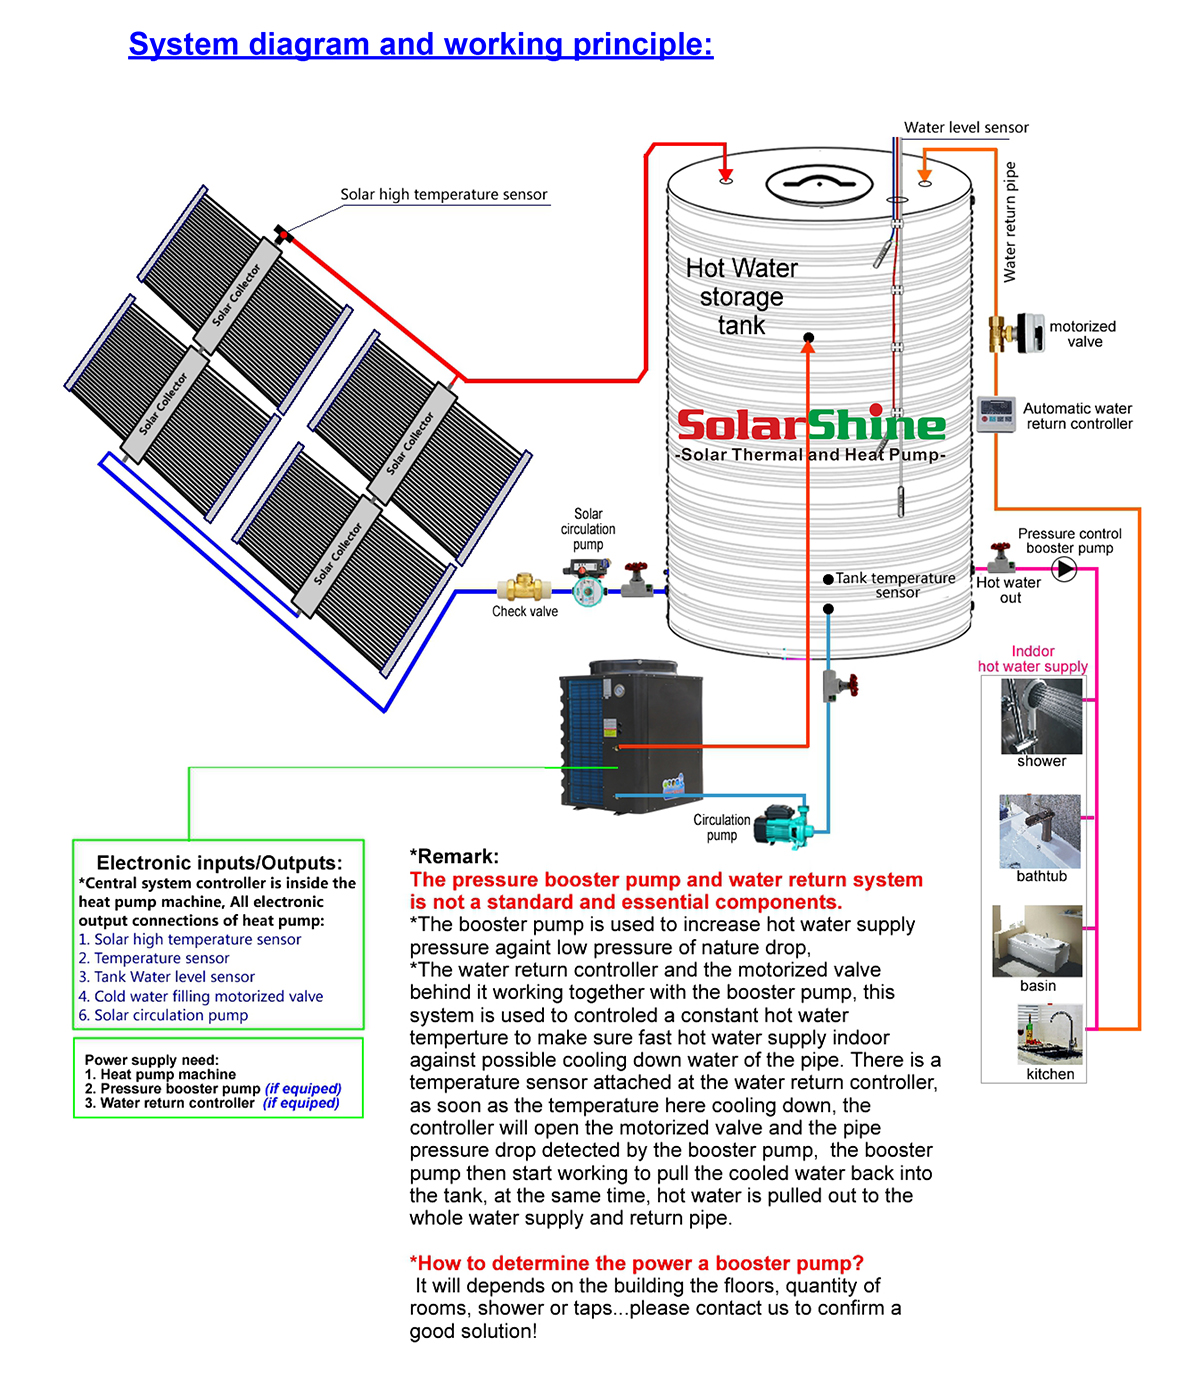 princípio de funcionamento do sistema de bomba de calor híbrido solar